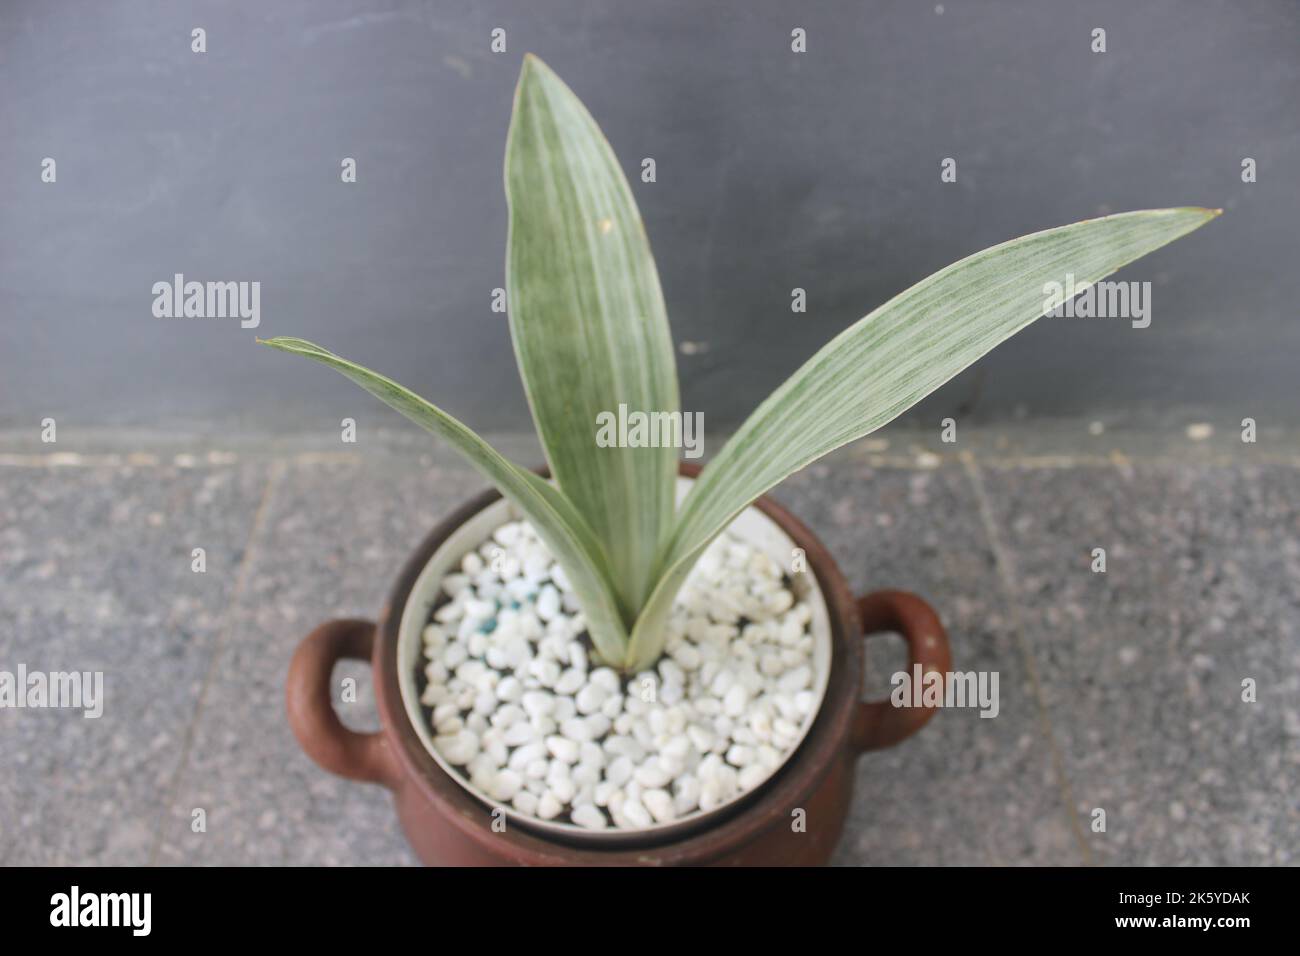 Primer plano de una planta de sansivera de plata en una olla sobre un fondo borroso. El nombre indonesio es la lengua de la suegra plateada. Plantas ornamentales en el hogar Foto de stock